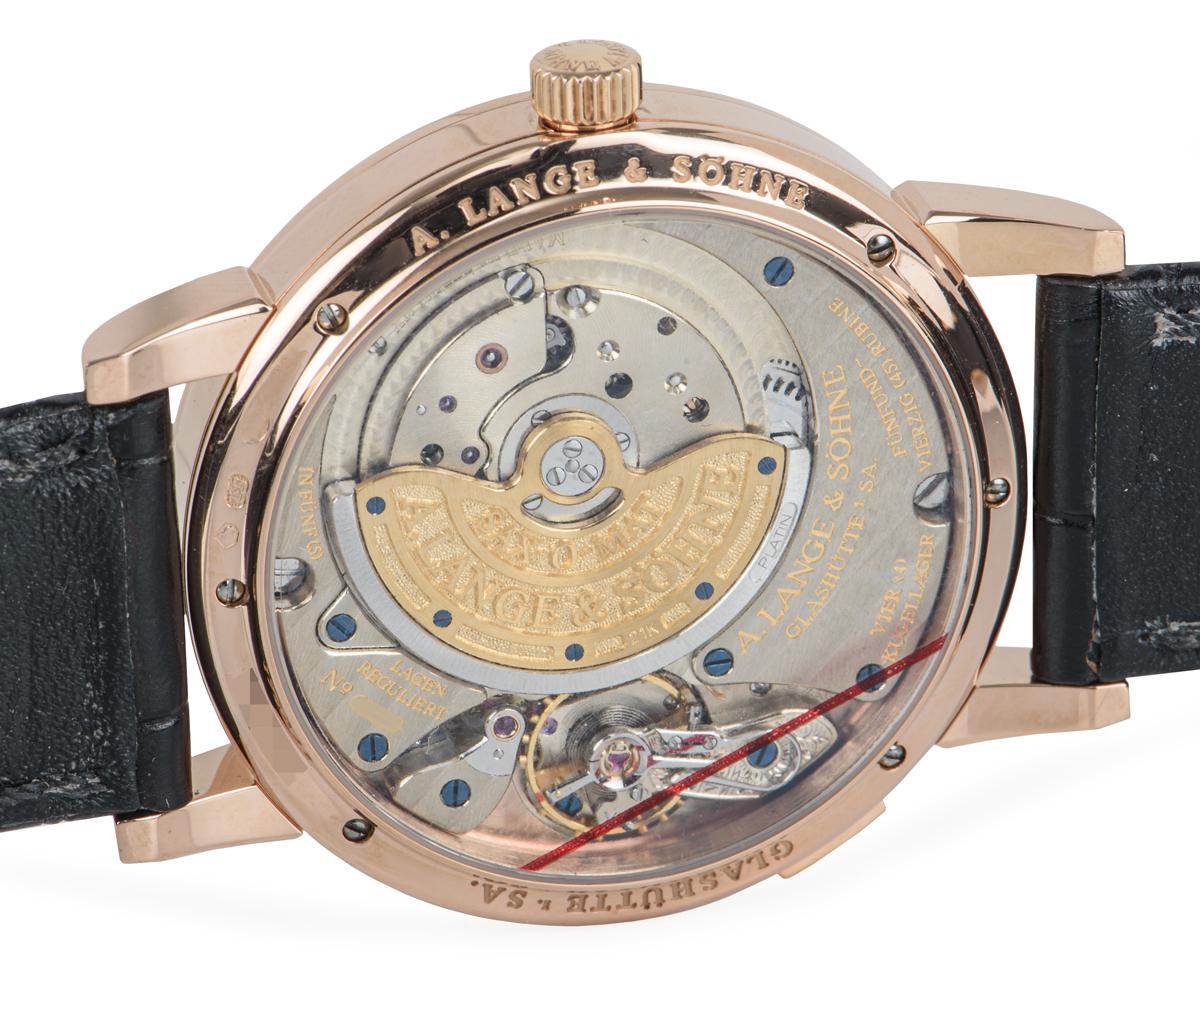 A. Lange & Sohne Saxonia Rose Gold Watch 315.032 1